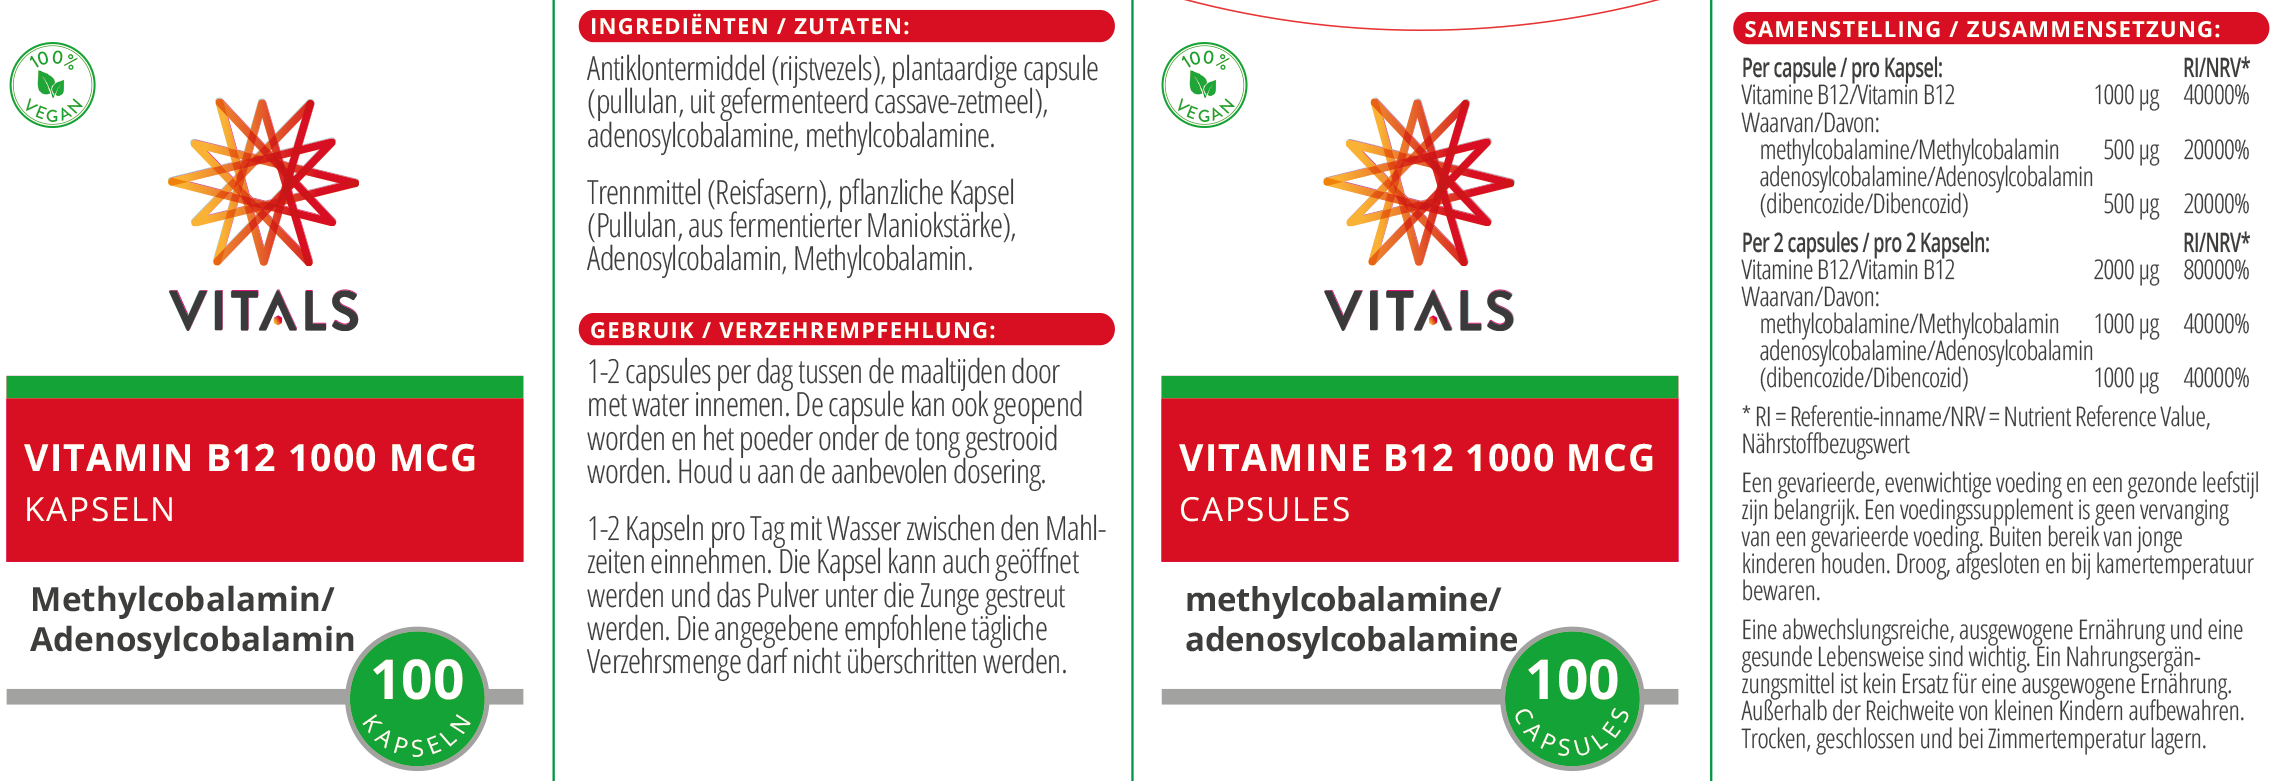 Vitamin B12 1000 mcg Kapseln